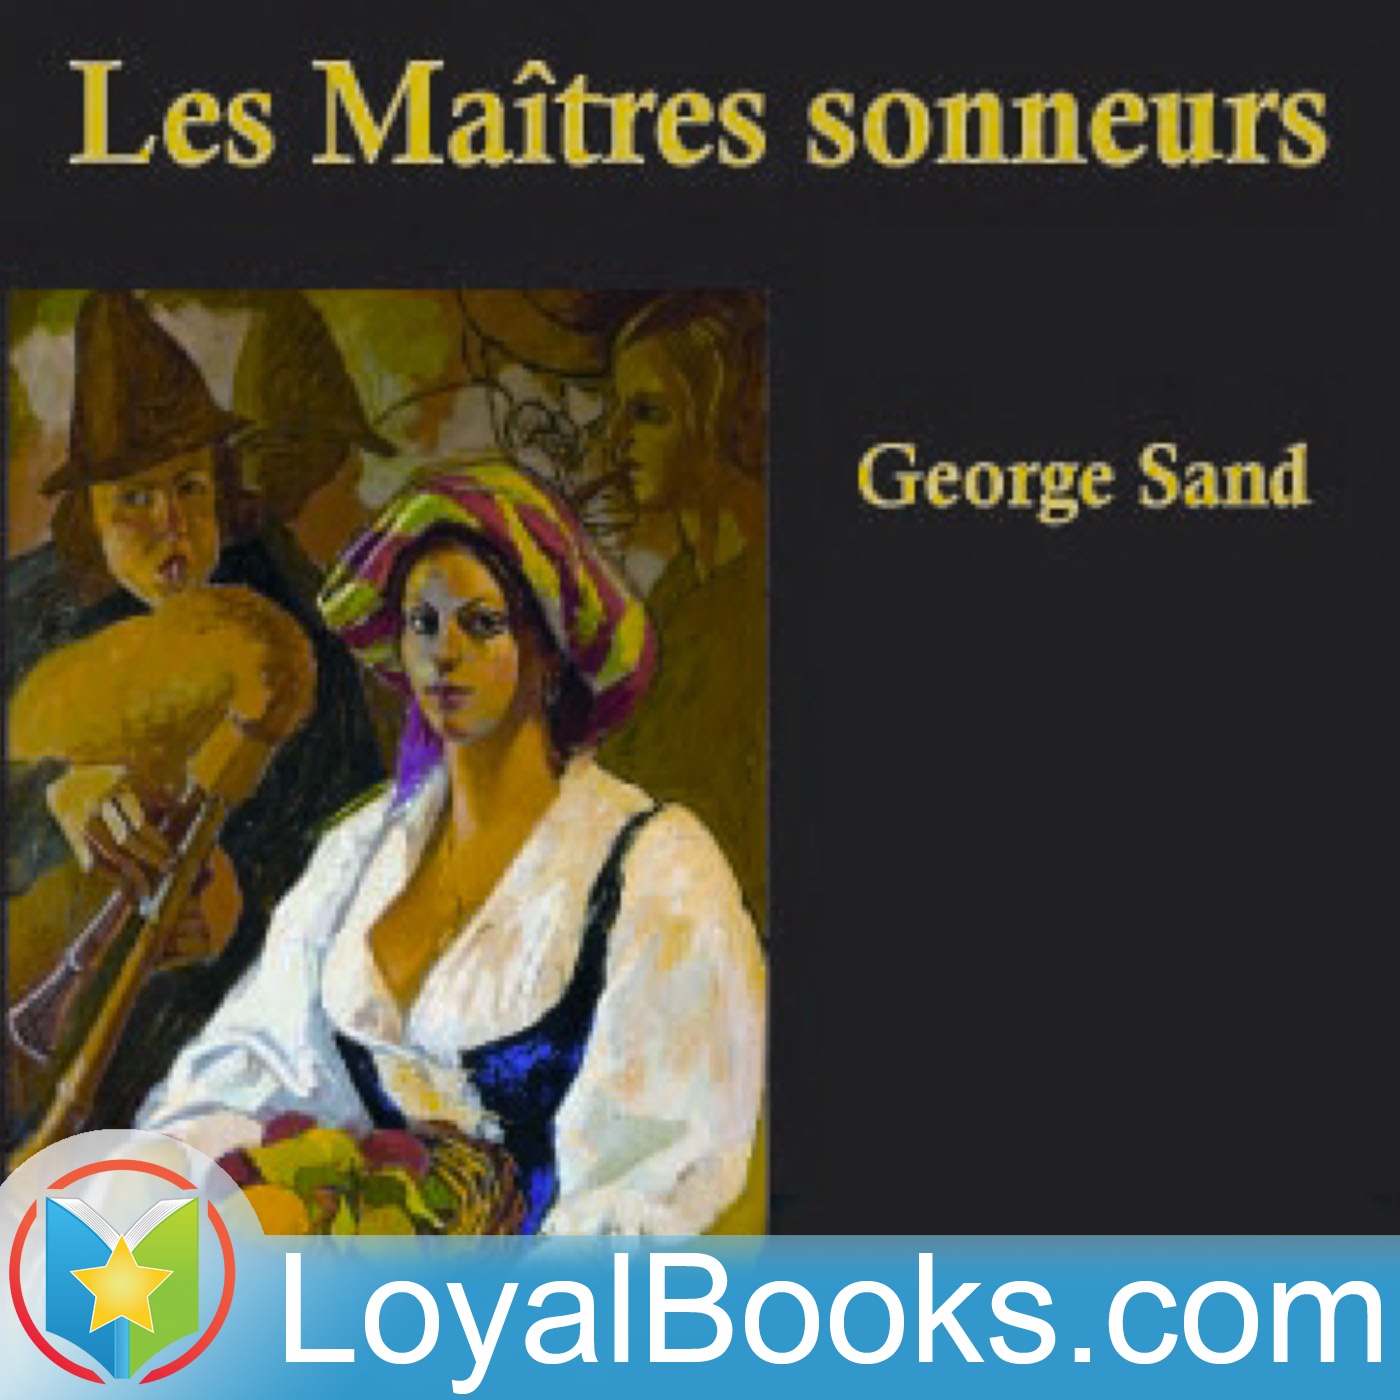 Les Maîtres sonneurs by George Sand